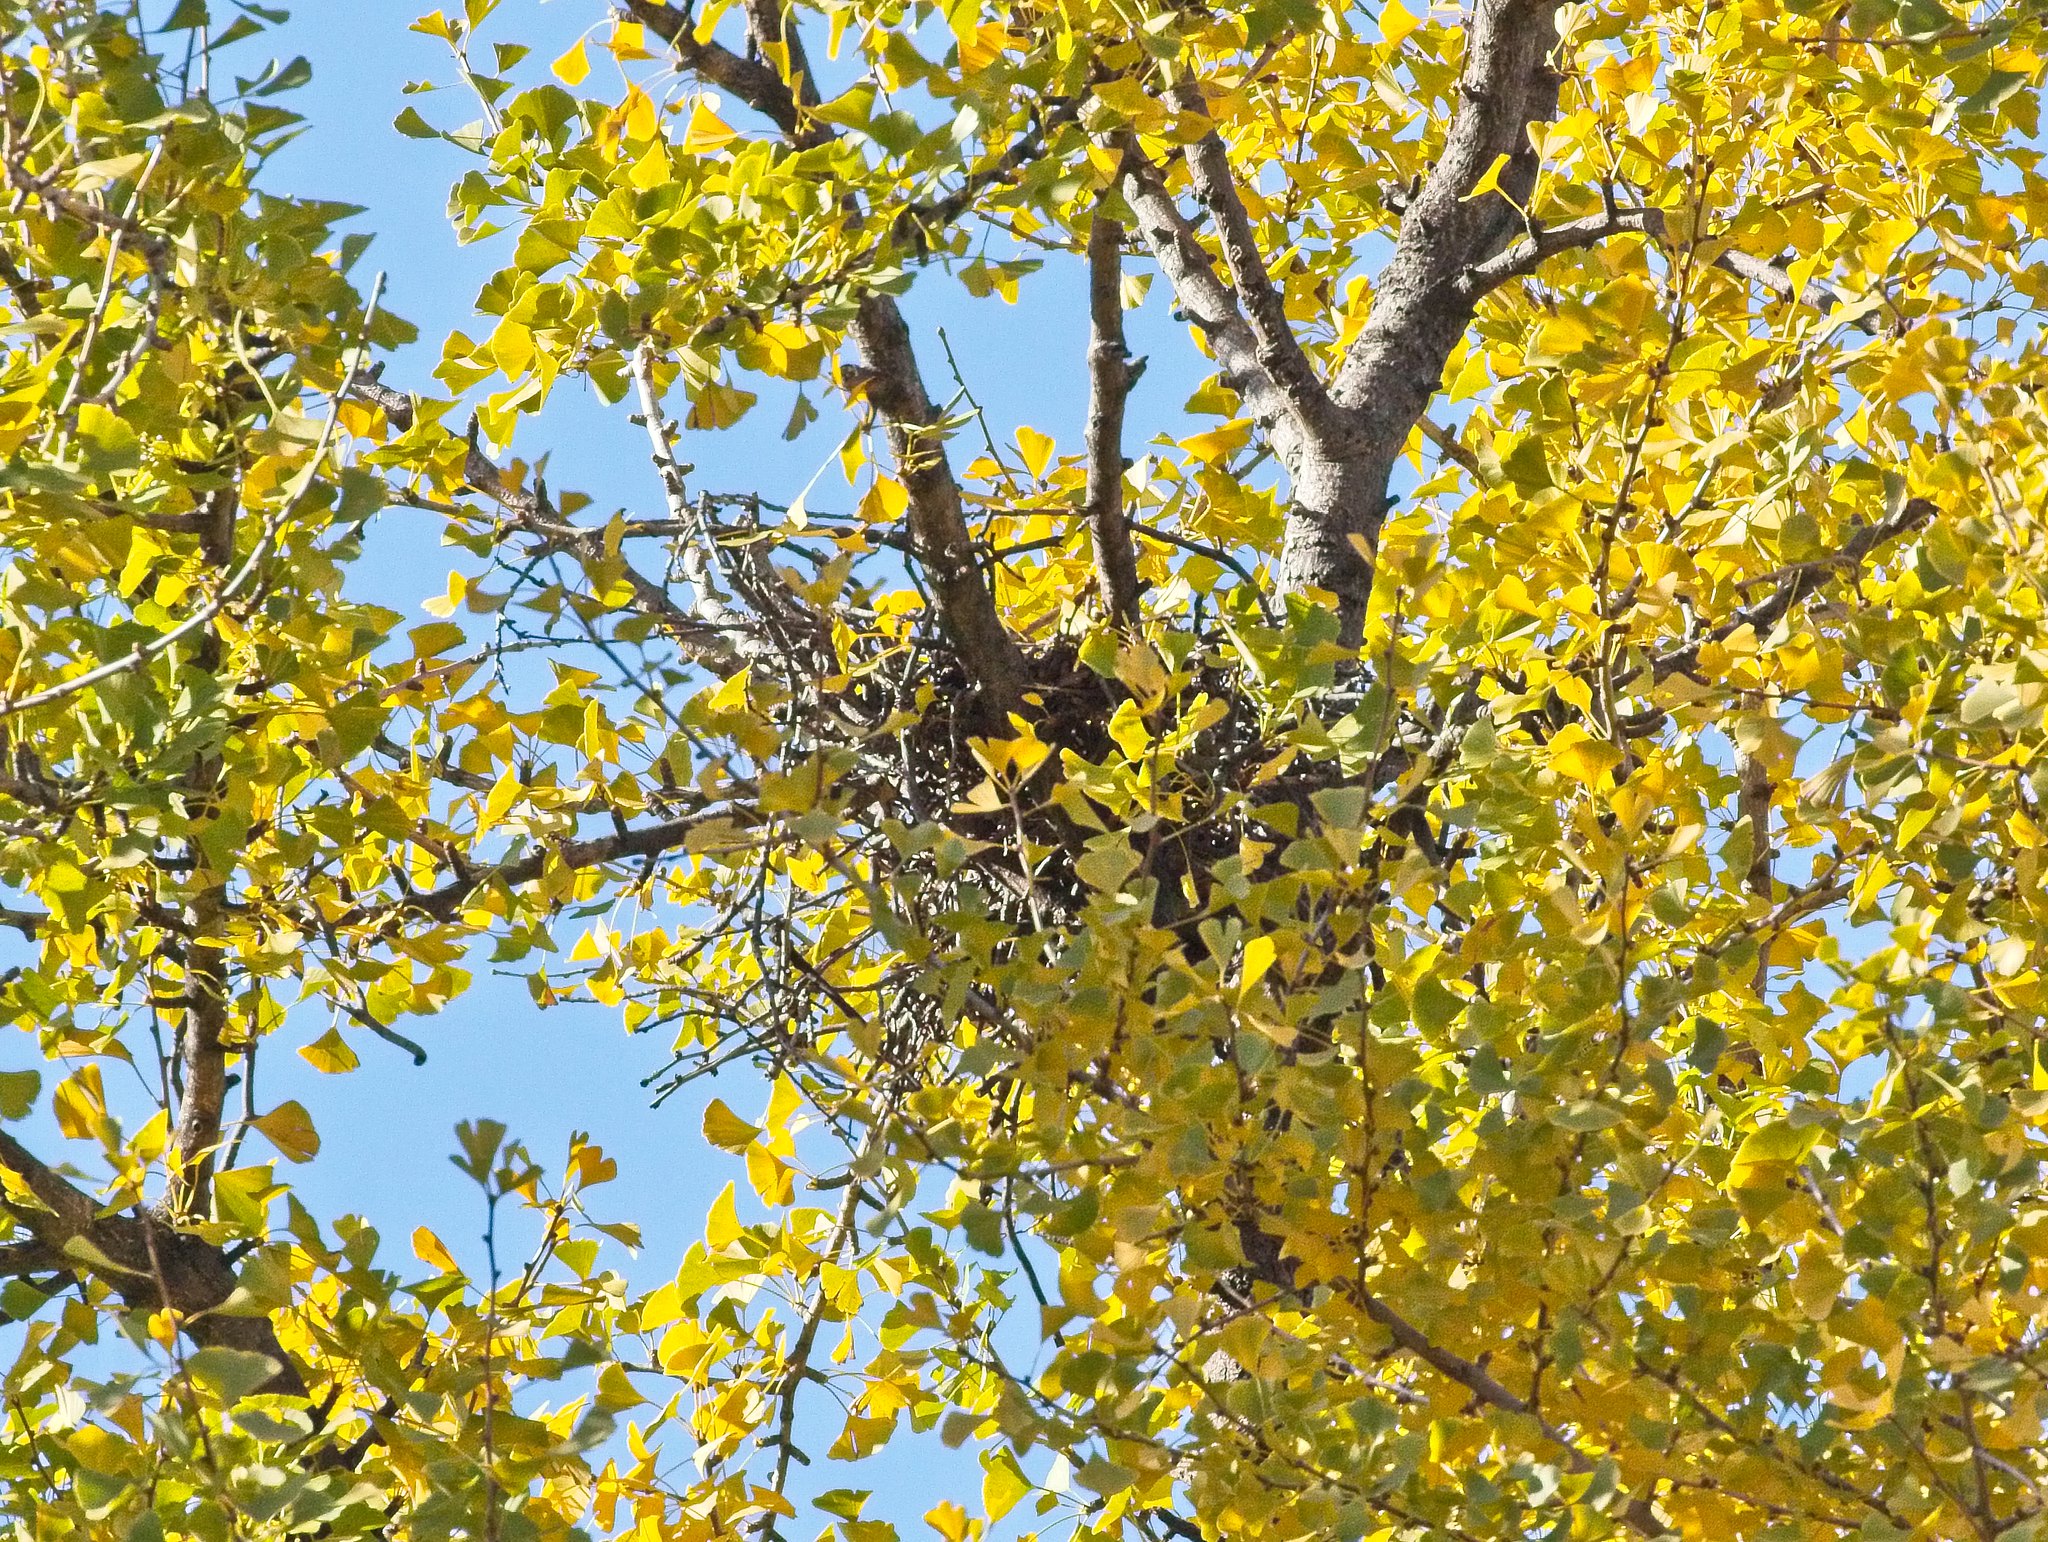 Tompkins Square Park hawk nest